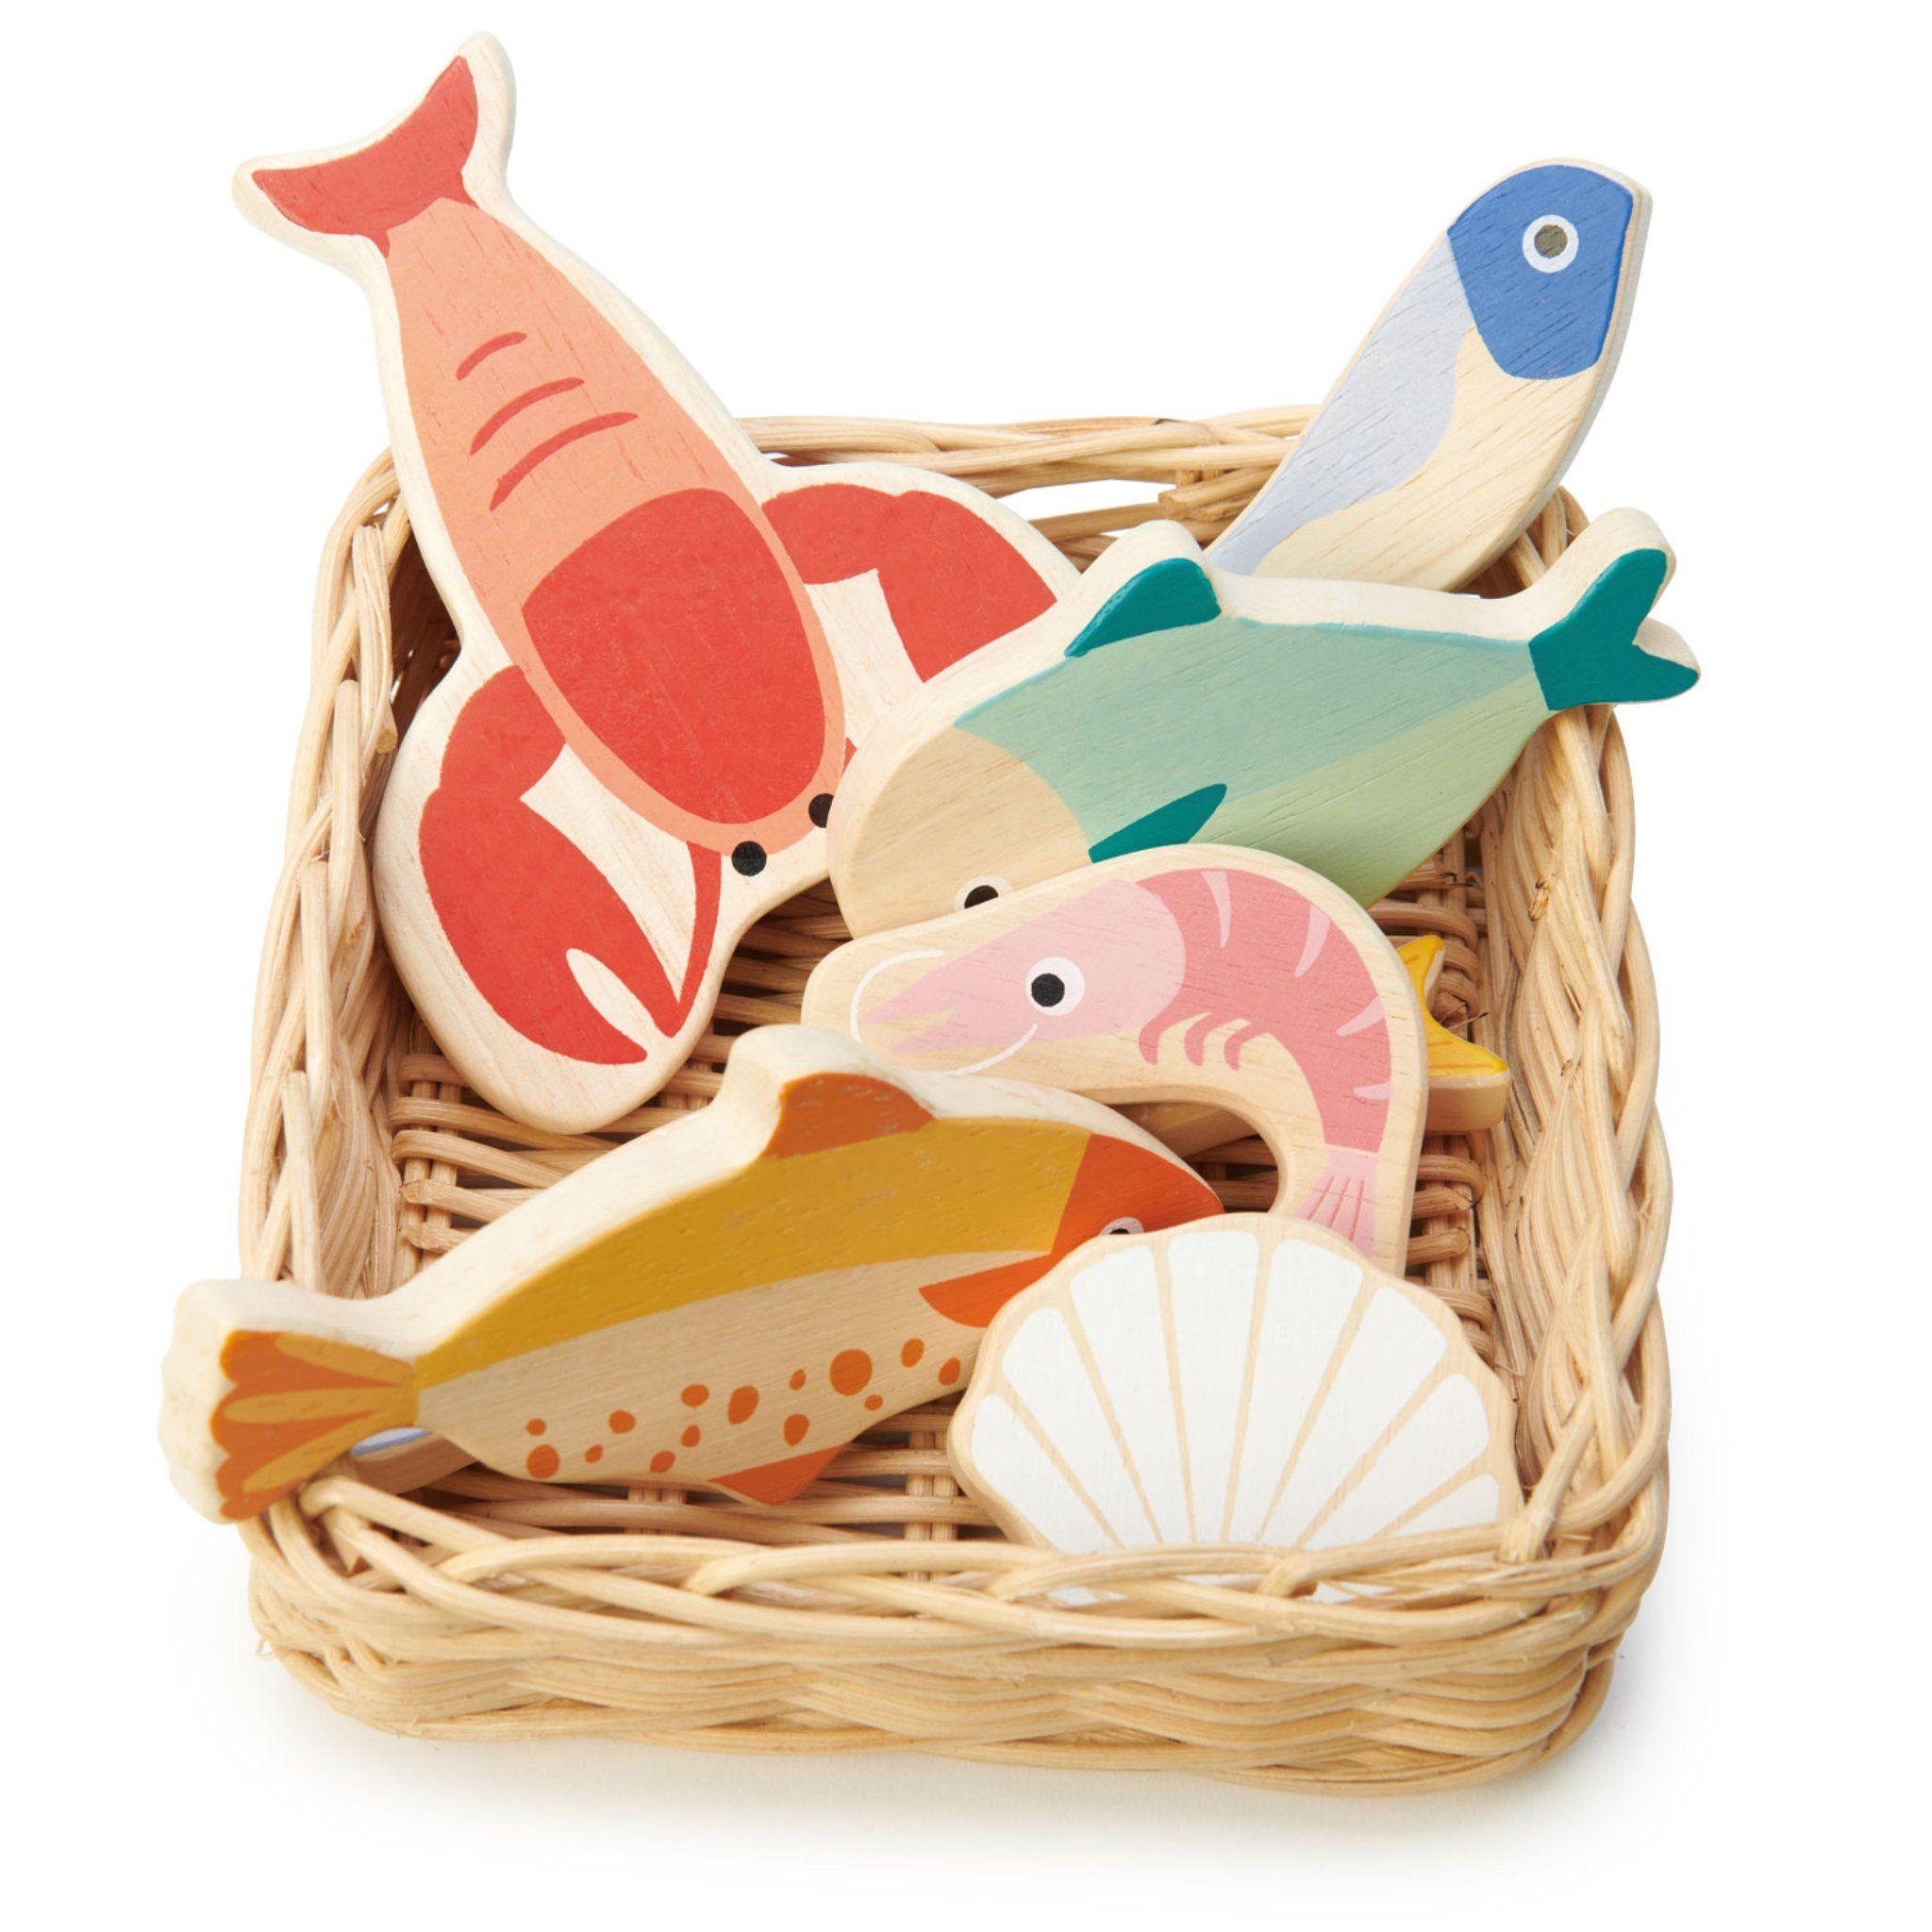 Tender Blattspielzeug: Korbkorb mit Fisch- und Meeresfrüchte -Meeresfrüchte -Korb